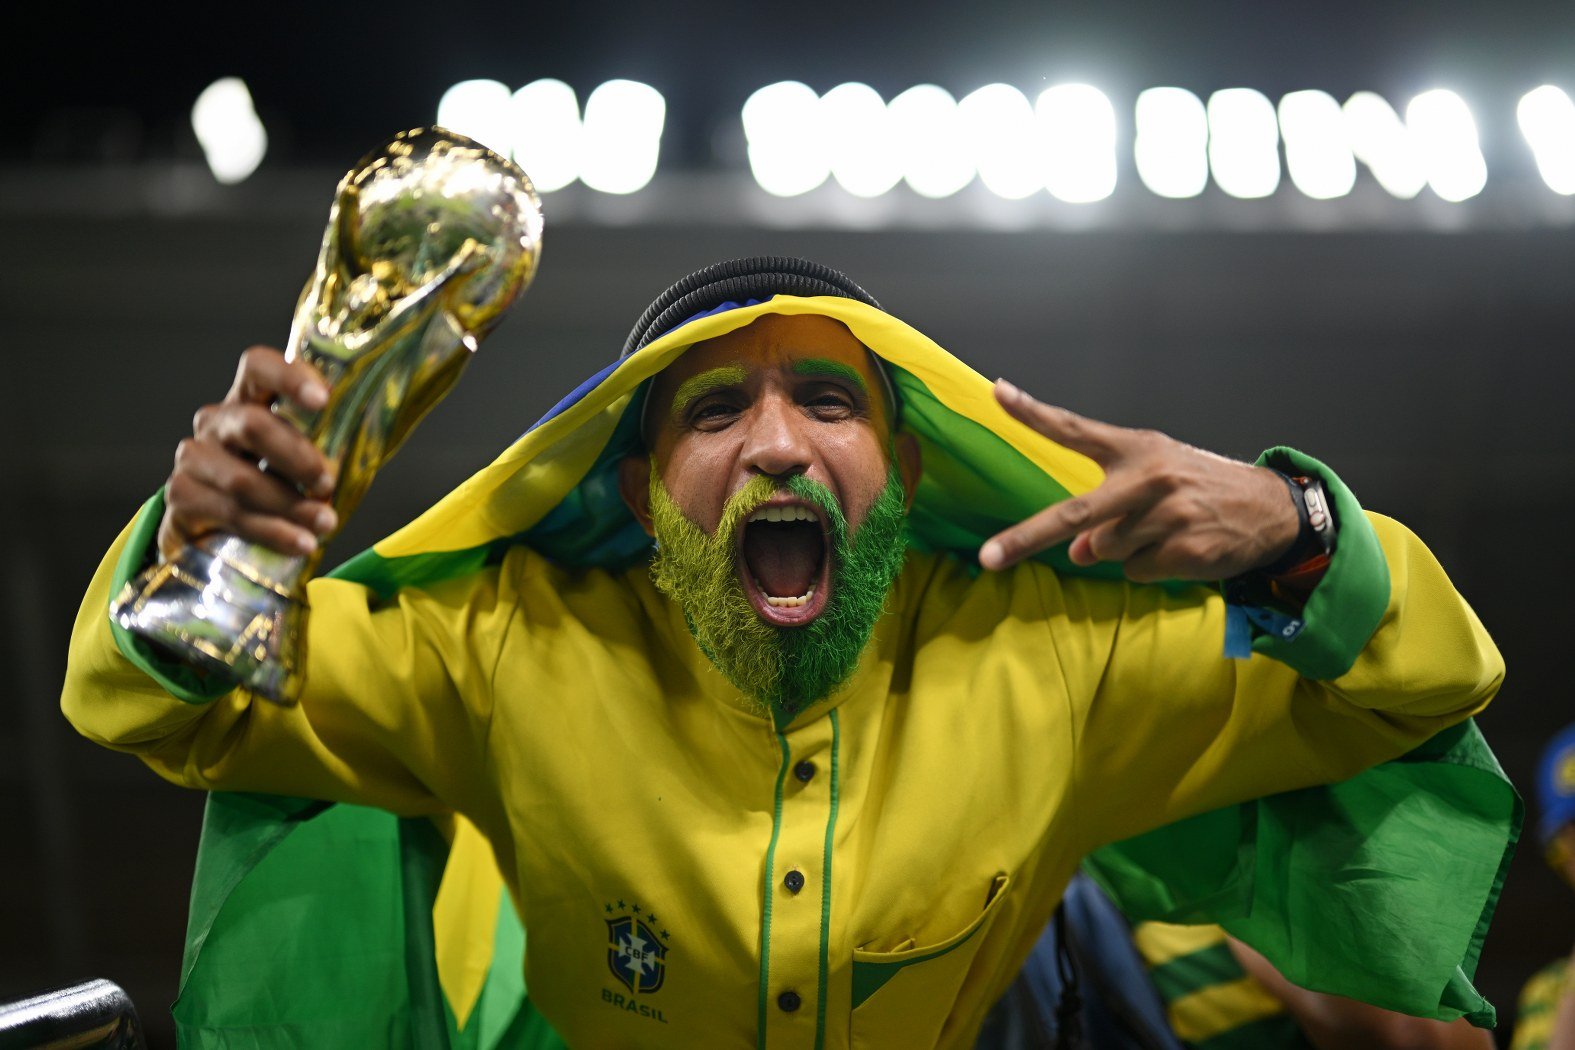 Този атрактивен фен на Бразилия предвкусваше световната титла след втората победа в групата - 1:0 над Швейцария, което означаваше класиране на осминафиналите.